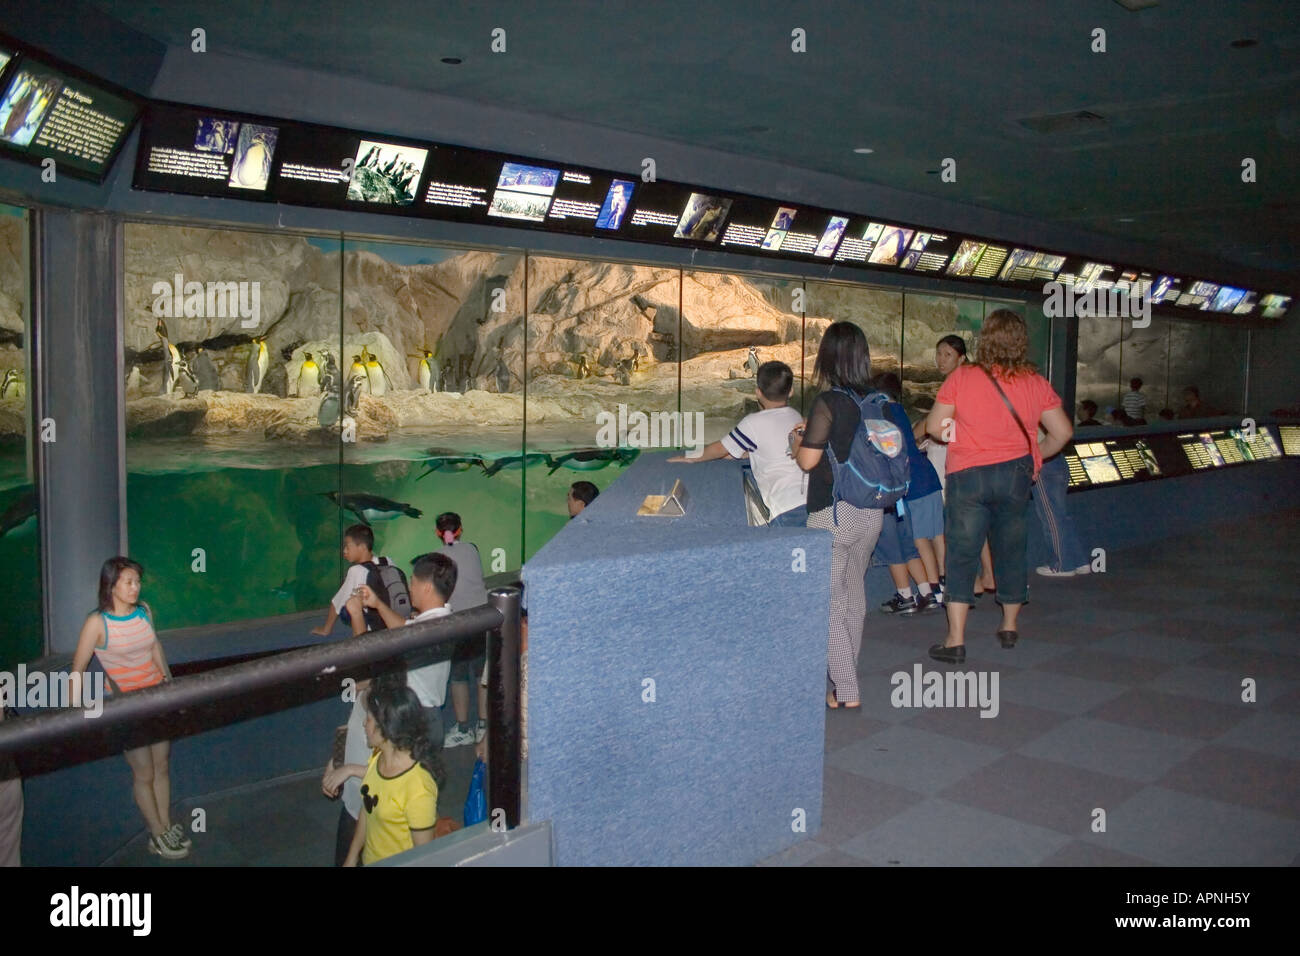 Les spectateurs à l'intérieur de l'enceinte de pingouin zoo de Singapour dans la plate-forme d'affichage Banque D'Images